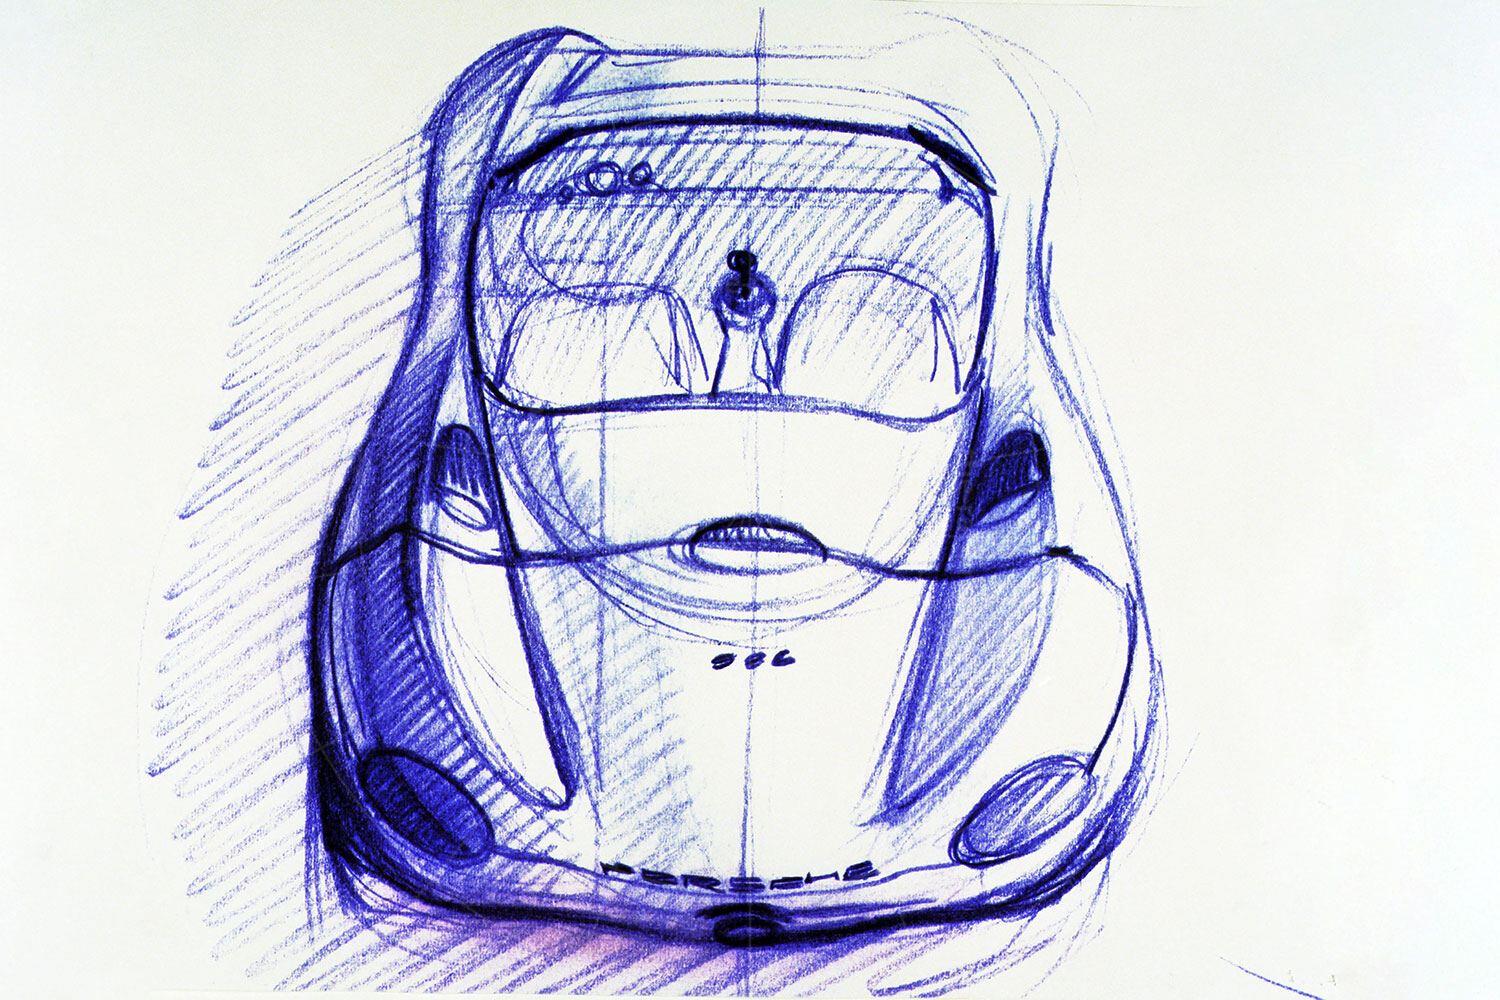 Porsche Boxster concept design sketch Pic: Porsche | Porsche Boxster concept design sketch